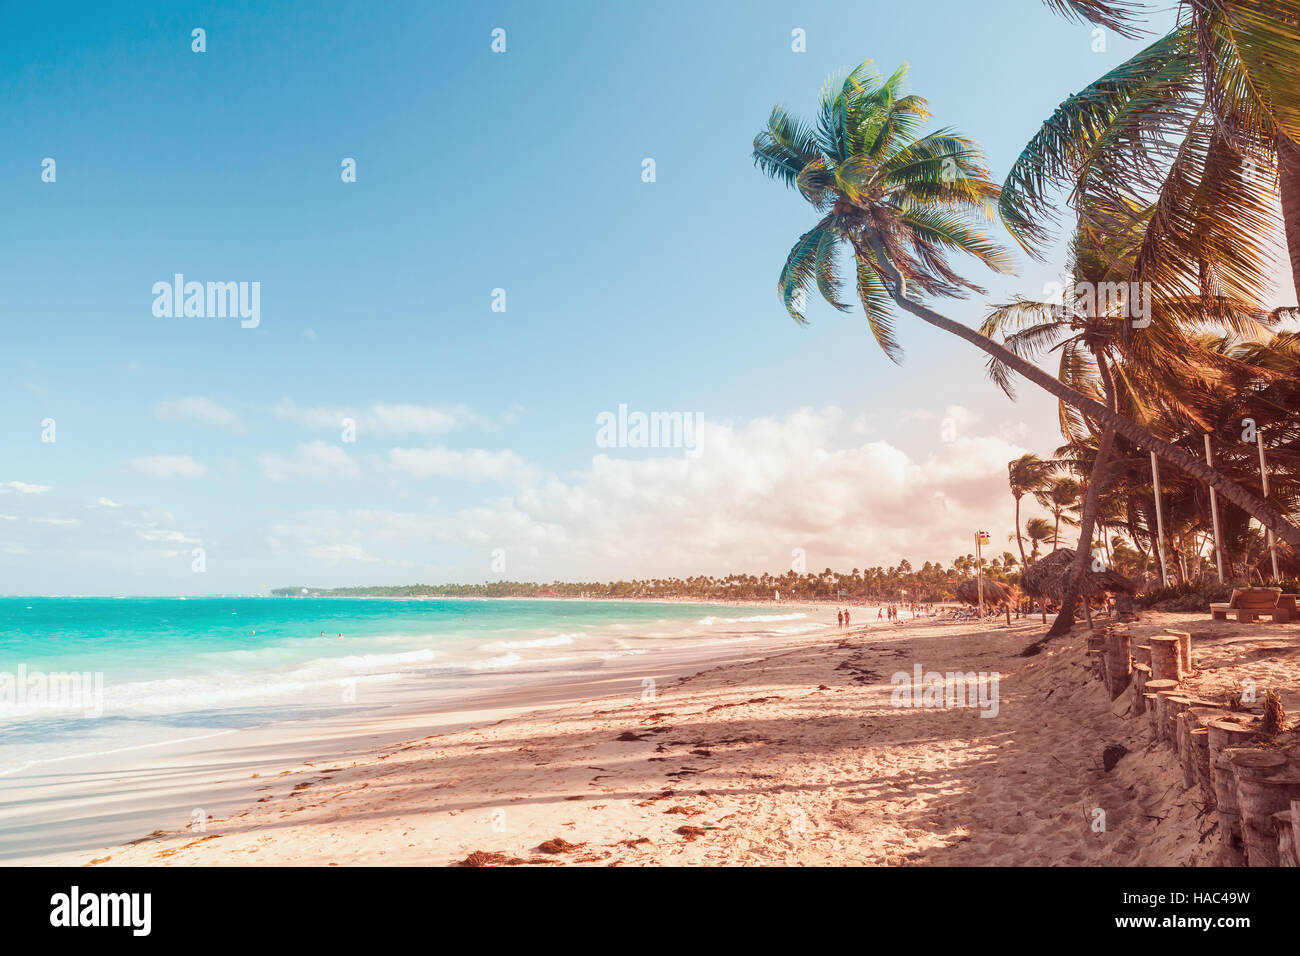 Palmen am Sandstrand. Küste des Atlantischen Ozeans, Dominikanische Republik, Punta Cana Resort. Roten Tonwertkorrektur, Gradienten-Filter-Effekt Stockfoto